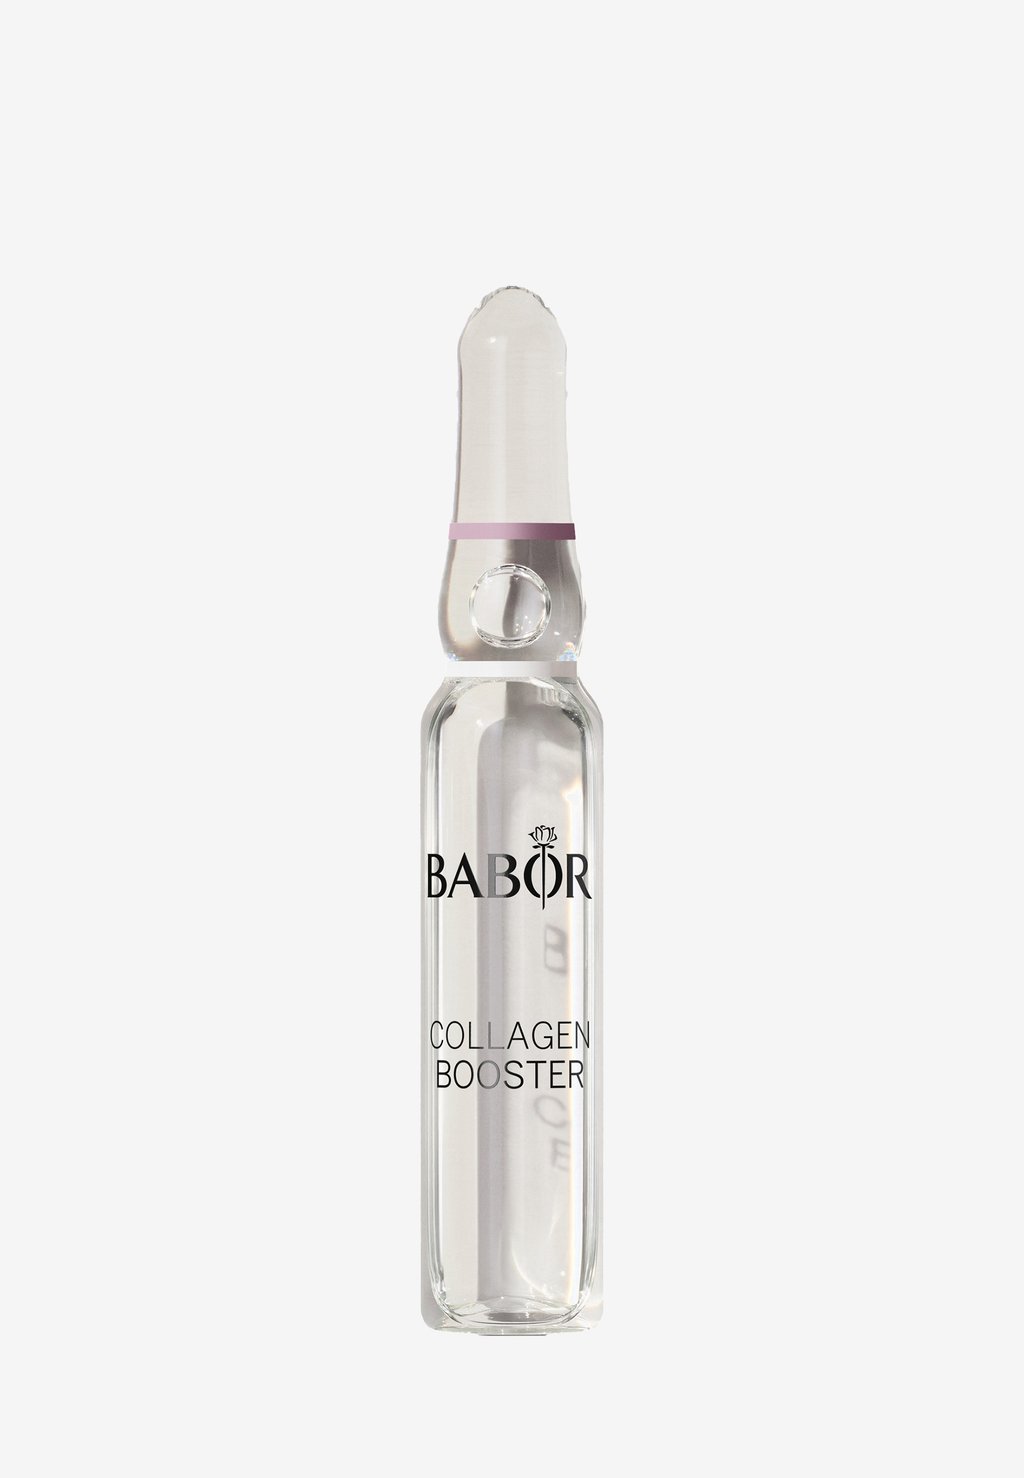 Набор для ухода за кожей Collagen Booster BABOR набор для ухода за кожей sos de blemish kit babor